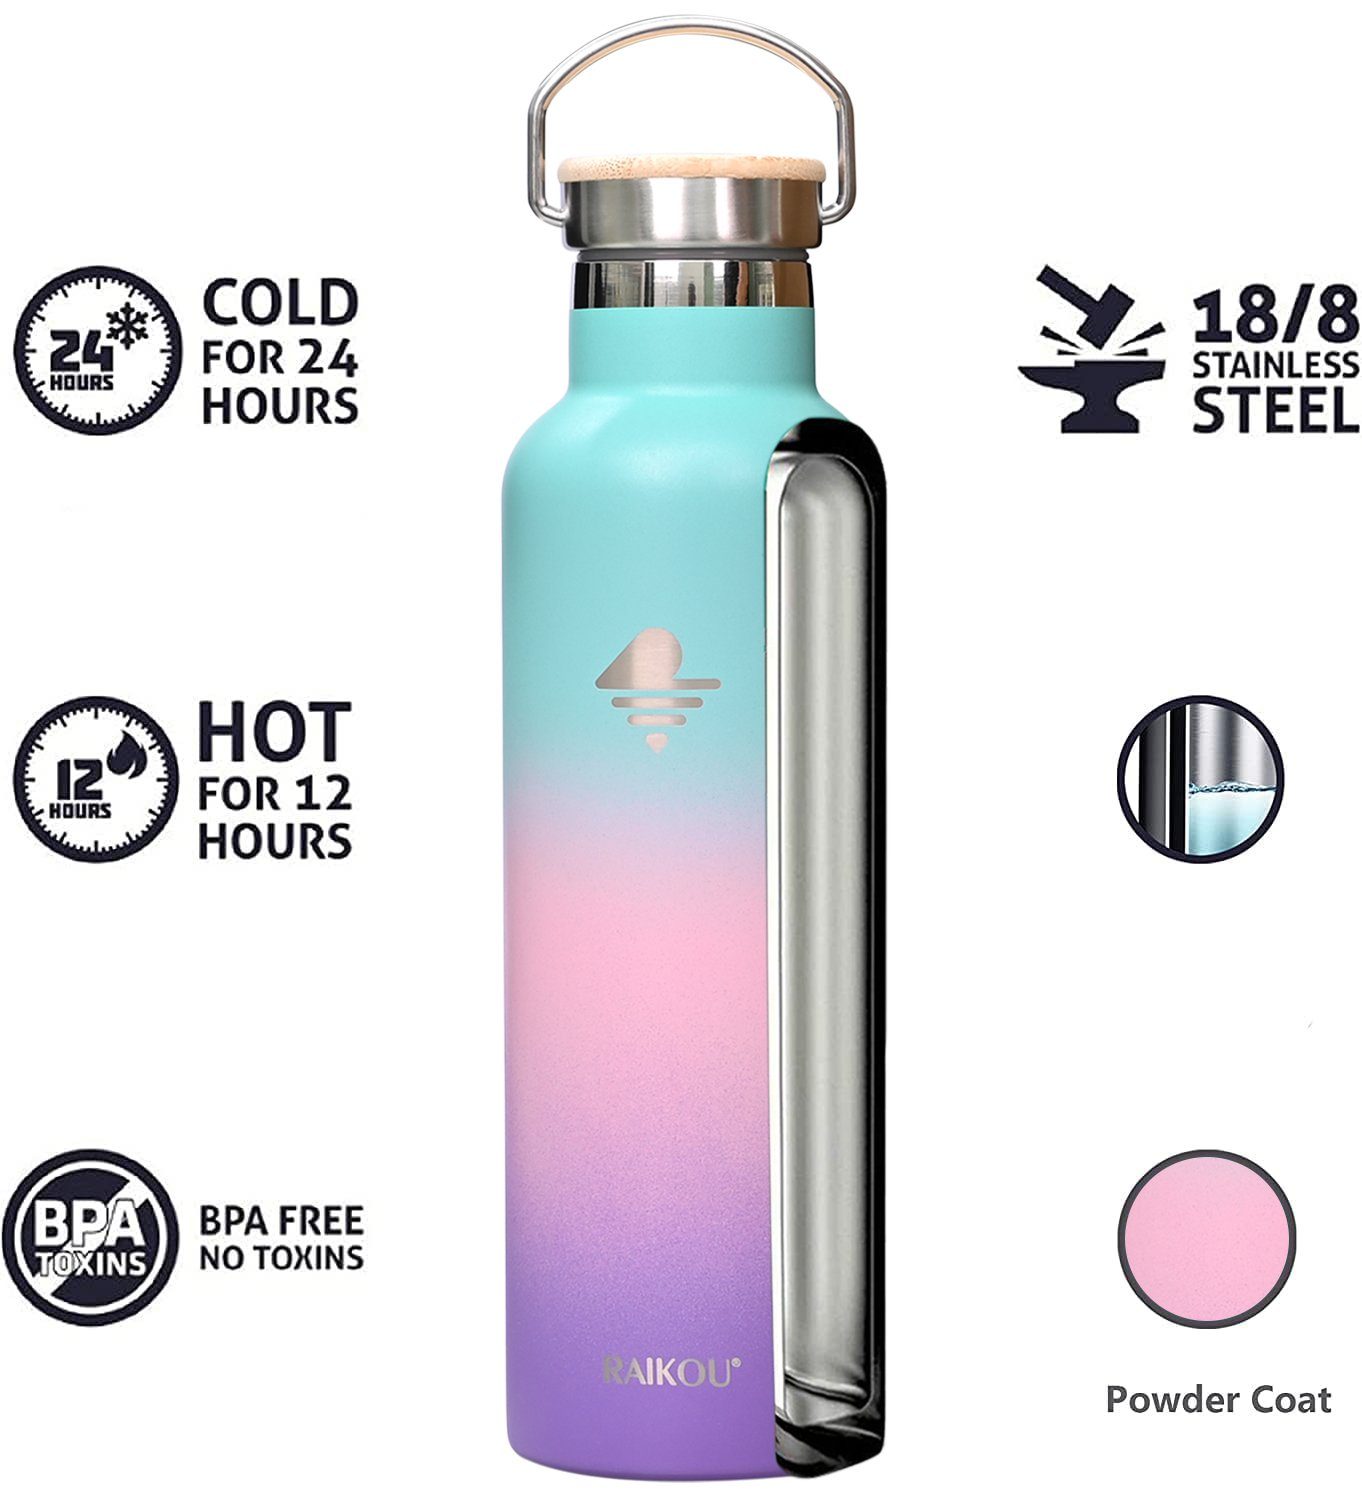 Vakuumisolierte 2 / Isolierflasche Edelstahl Trinkflasche 24H RAIKOU kalt,mit heiß Grün/Pink/Lavendel Thermoflasche, bis zu 12H Wasserflasche Deckel,350ml/500ml/750ml/1000ml